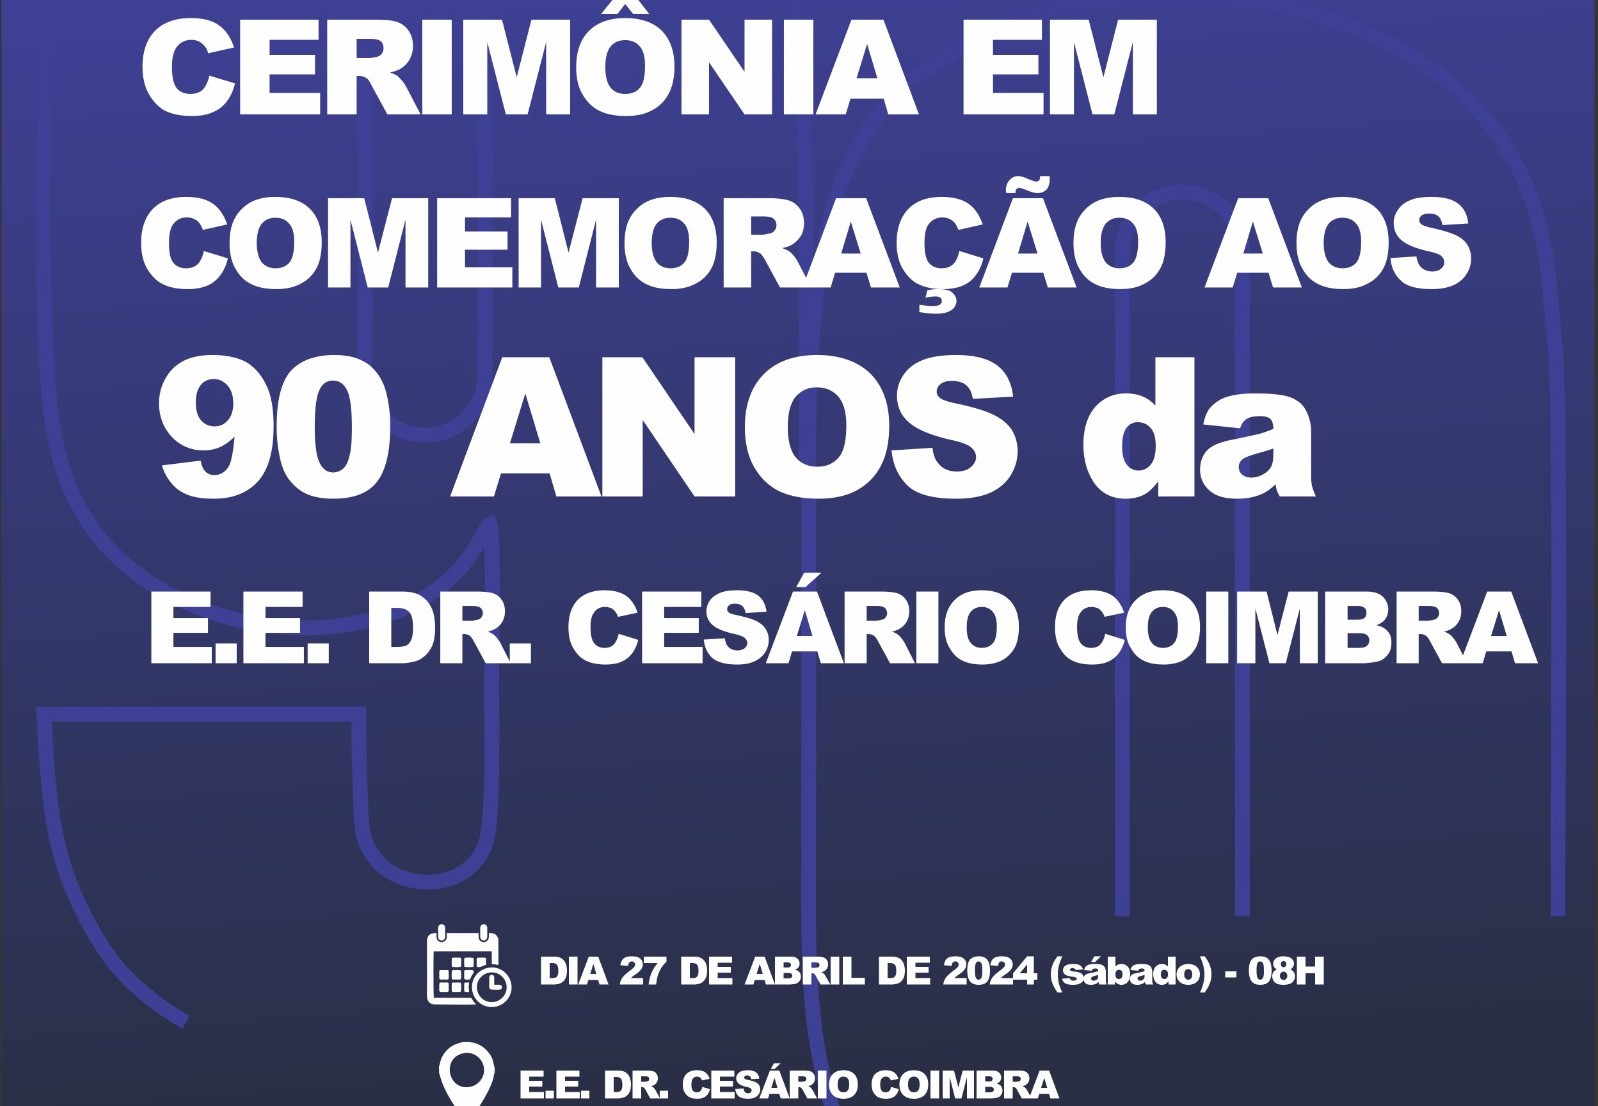 Escola Estadual “Dr. Cesário Coimbra” comemora 90 anos de existência em cerimônia